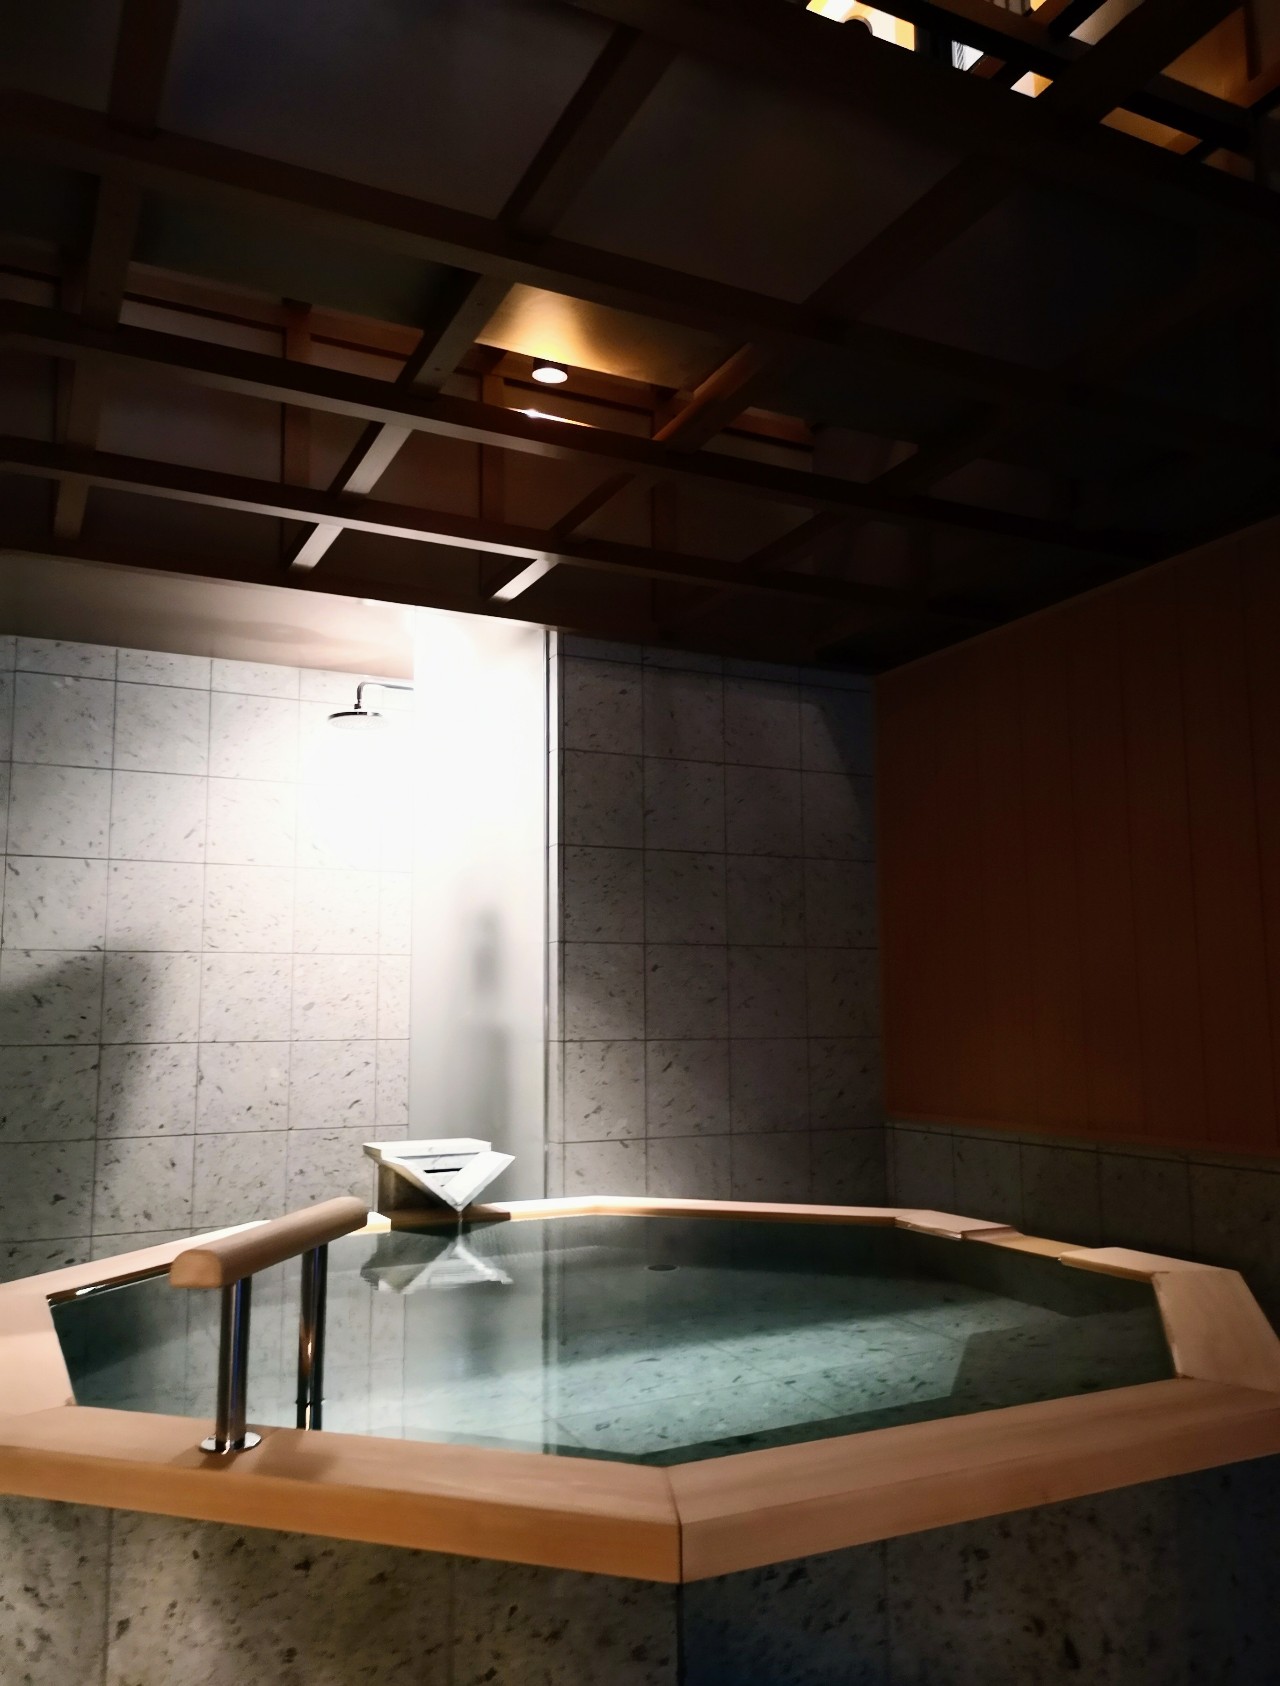 神奈川県足柄下郡・ホテル「はつはな」貸切温泉風呂「静寂の湯」